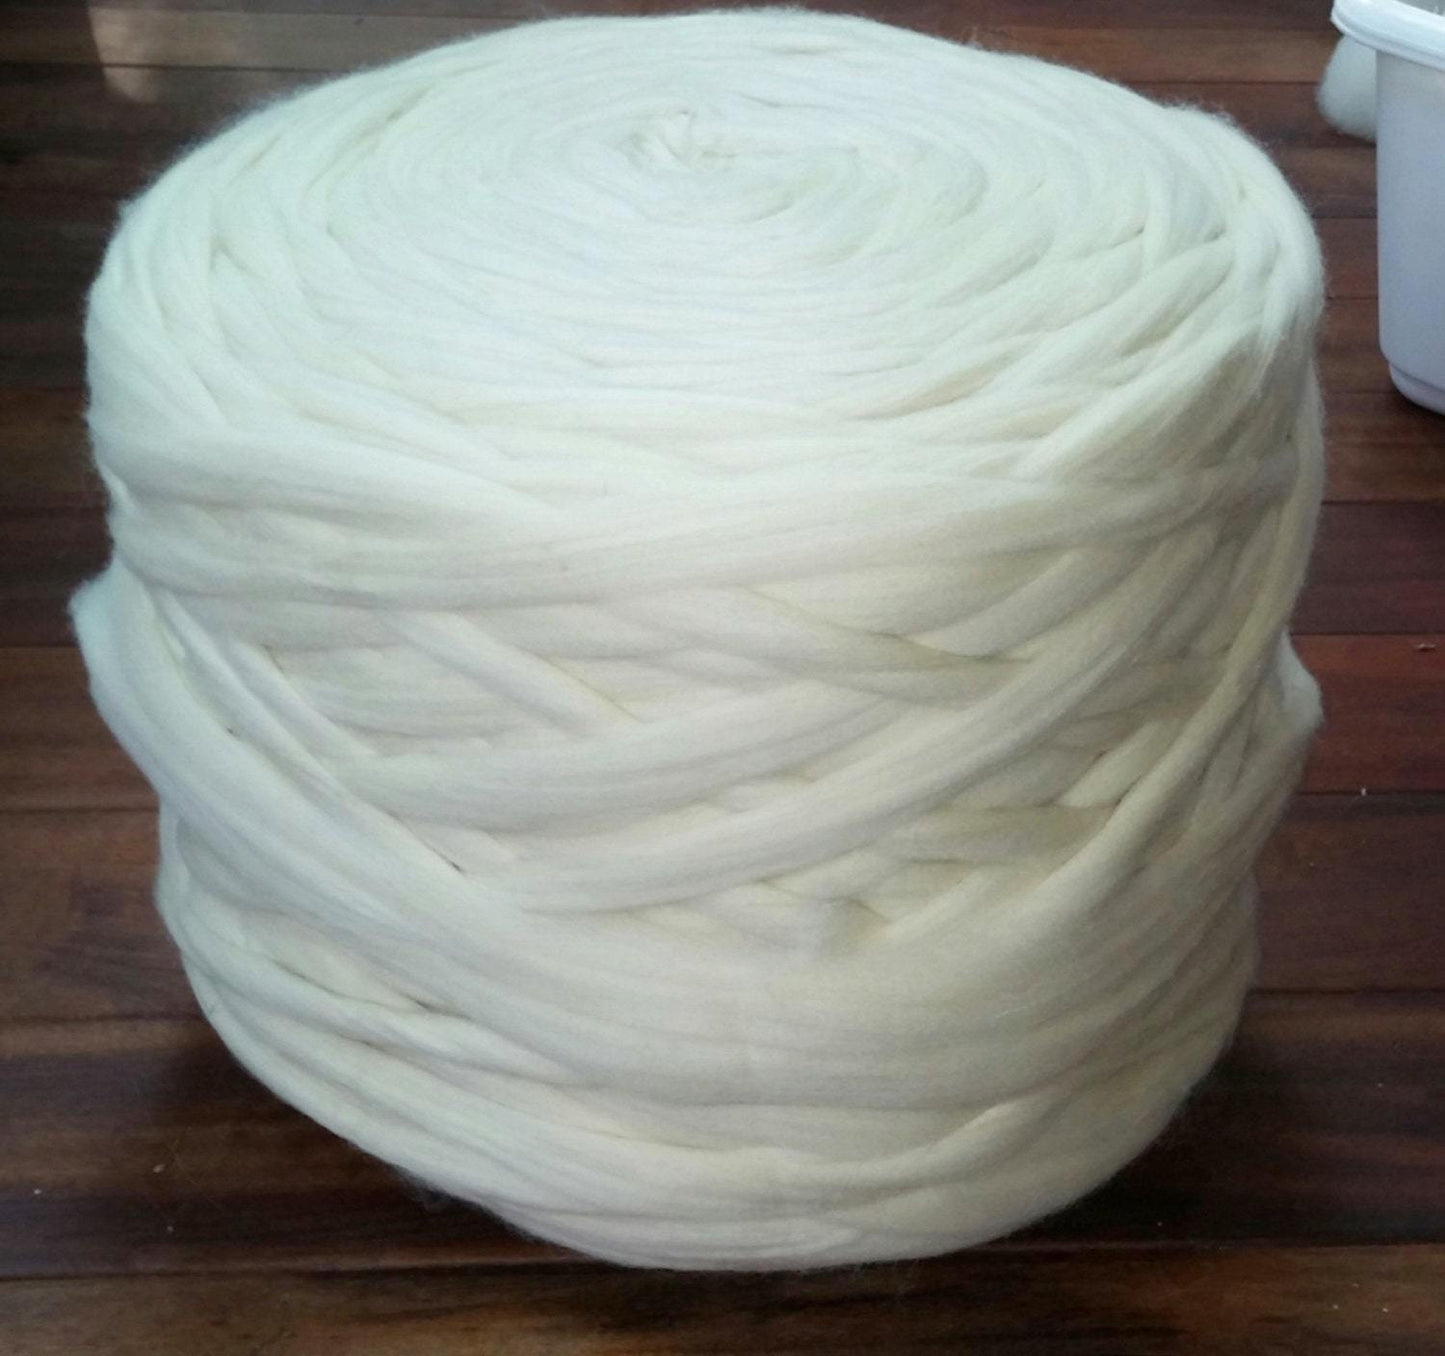 Art Class Wool Roving 30lbs Roll Natural White Wool Top Fiber Spinning, Felting, Knitting, Weaving Wool supplies Wool Bump Wool Supplier